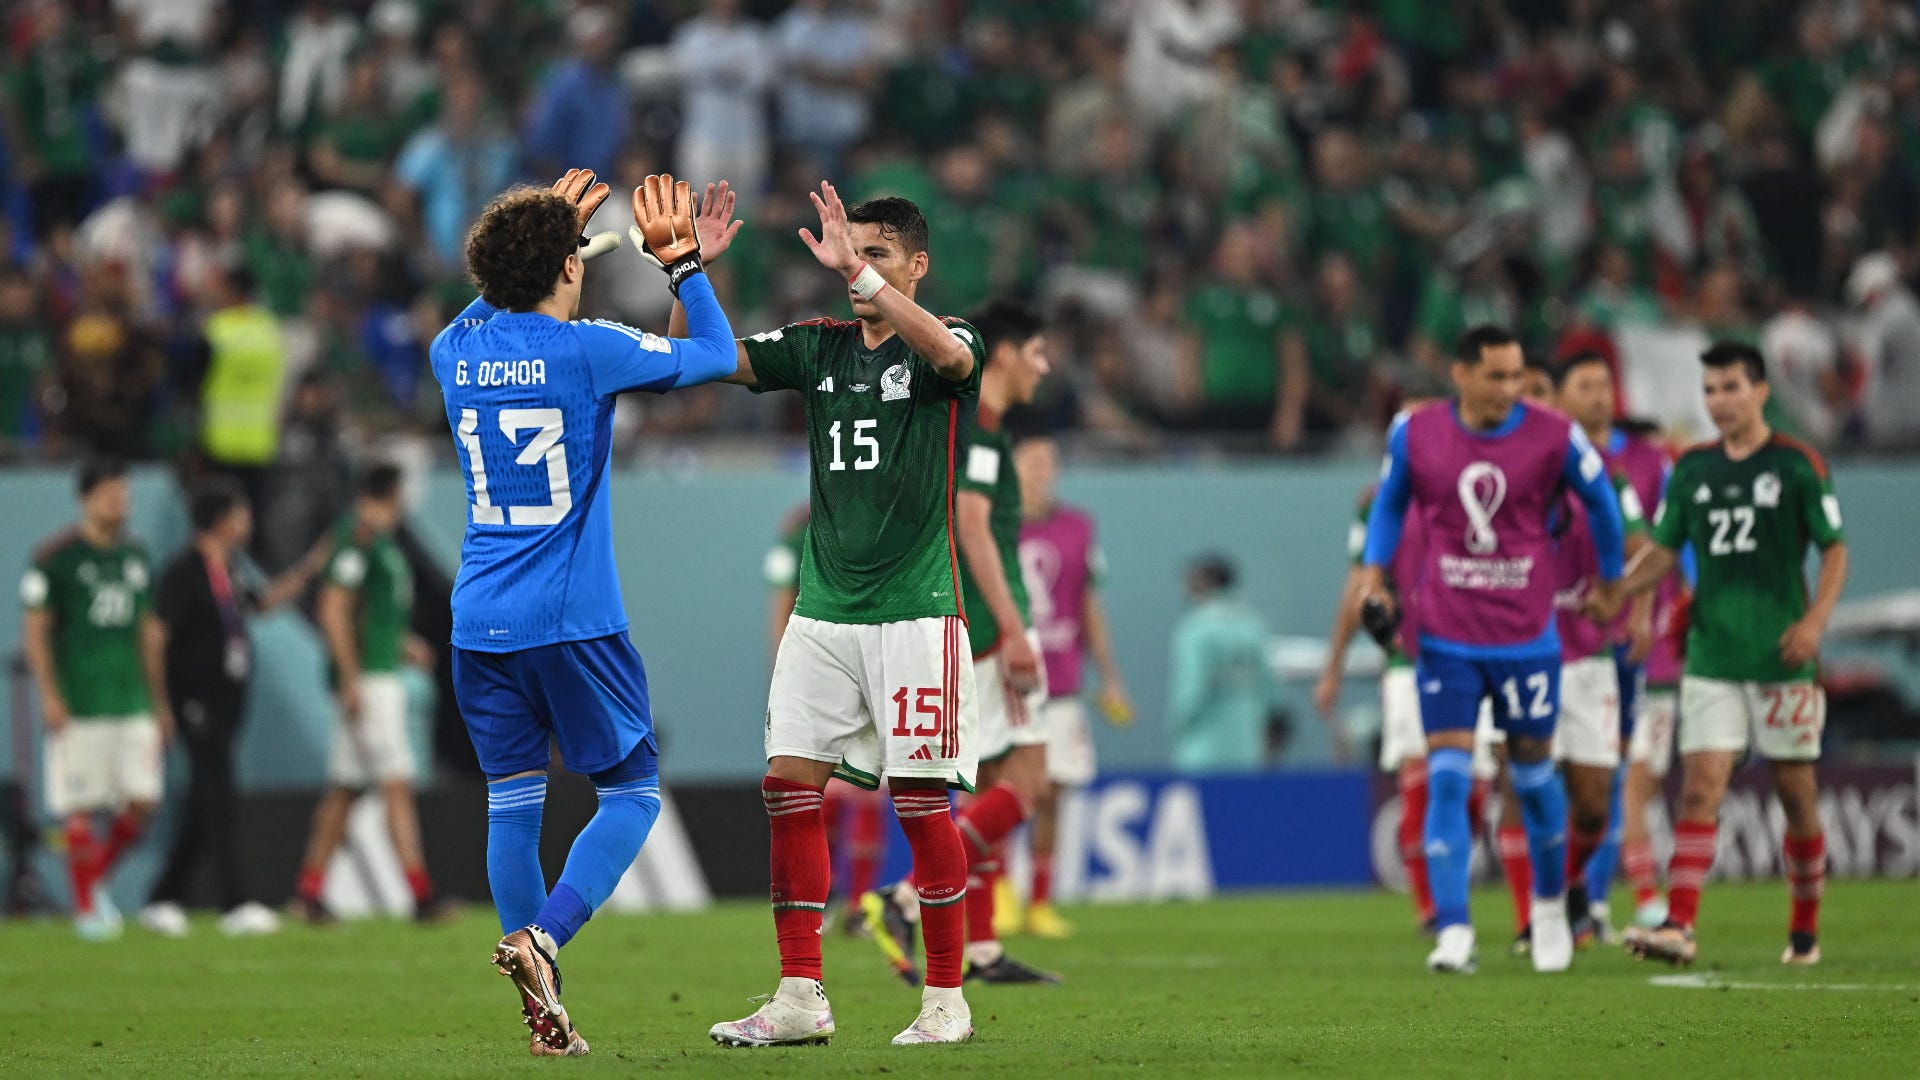 Jaki wynik jest dogodny dla reprezentacji Meksyku w meczu na MŚ 2022 Katar pomiędzy Polską a Arabią Saudyjską?